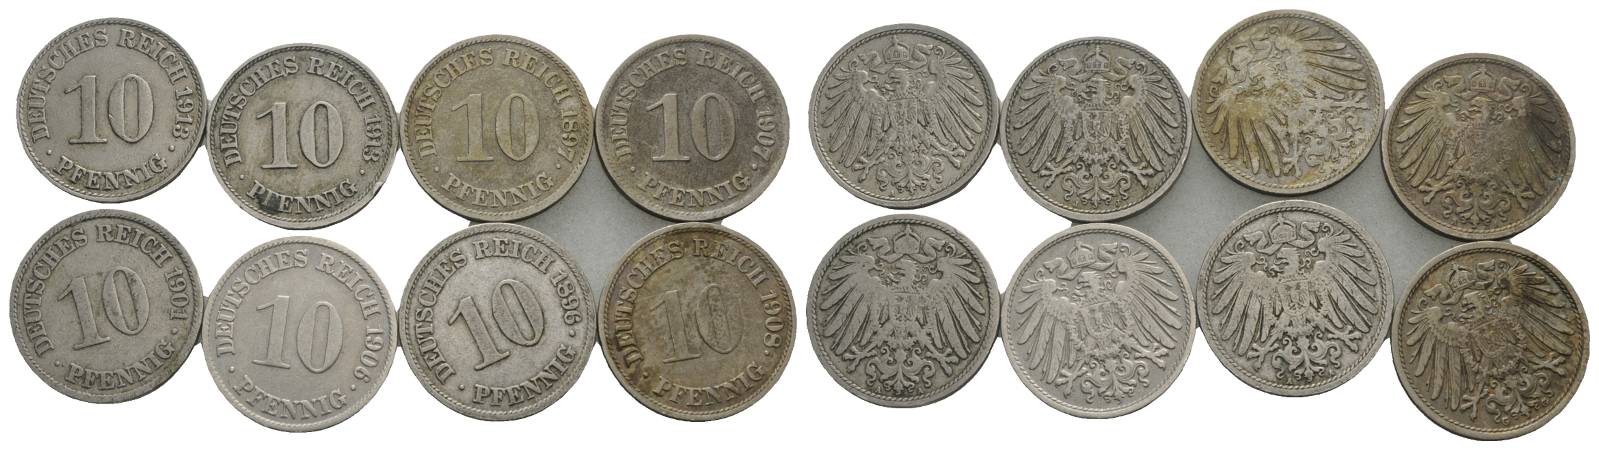  Kaiserreich, 10 Pfennig (8 Kleinmünzen)   